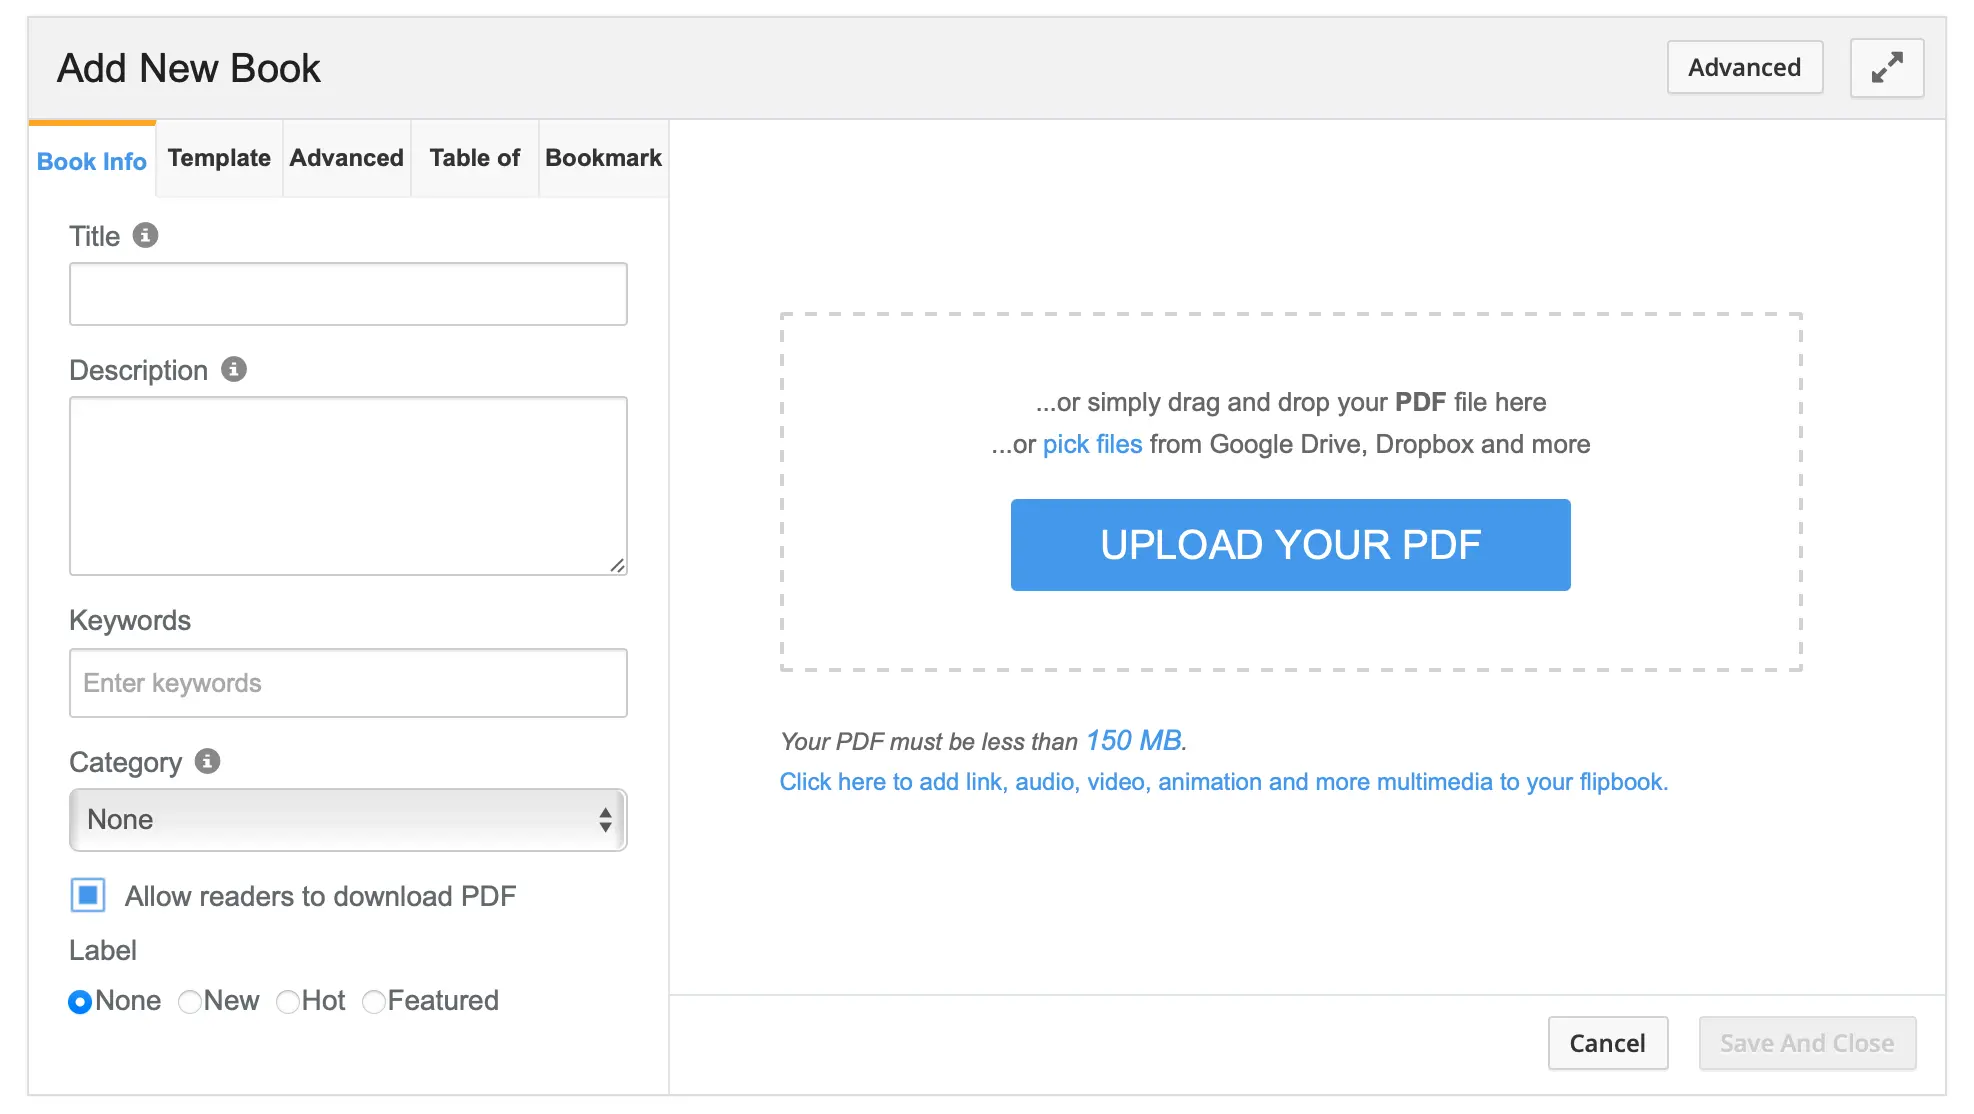 คลิกปุ่ม UPLOAD YOUR PDF  เพื่อเลือกไฟล์ PDF ทำการอัพโหลดเข้าสู่ระบบ 